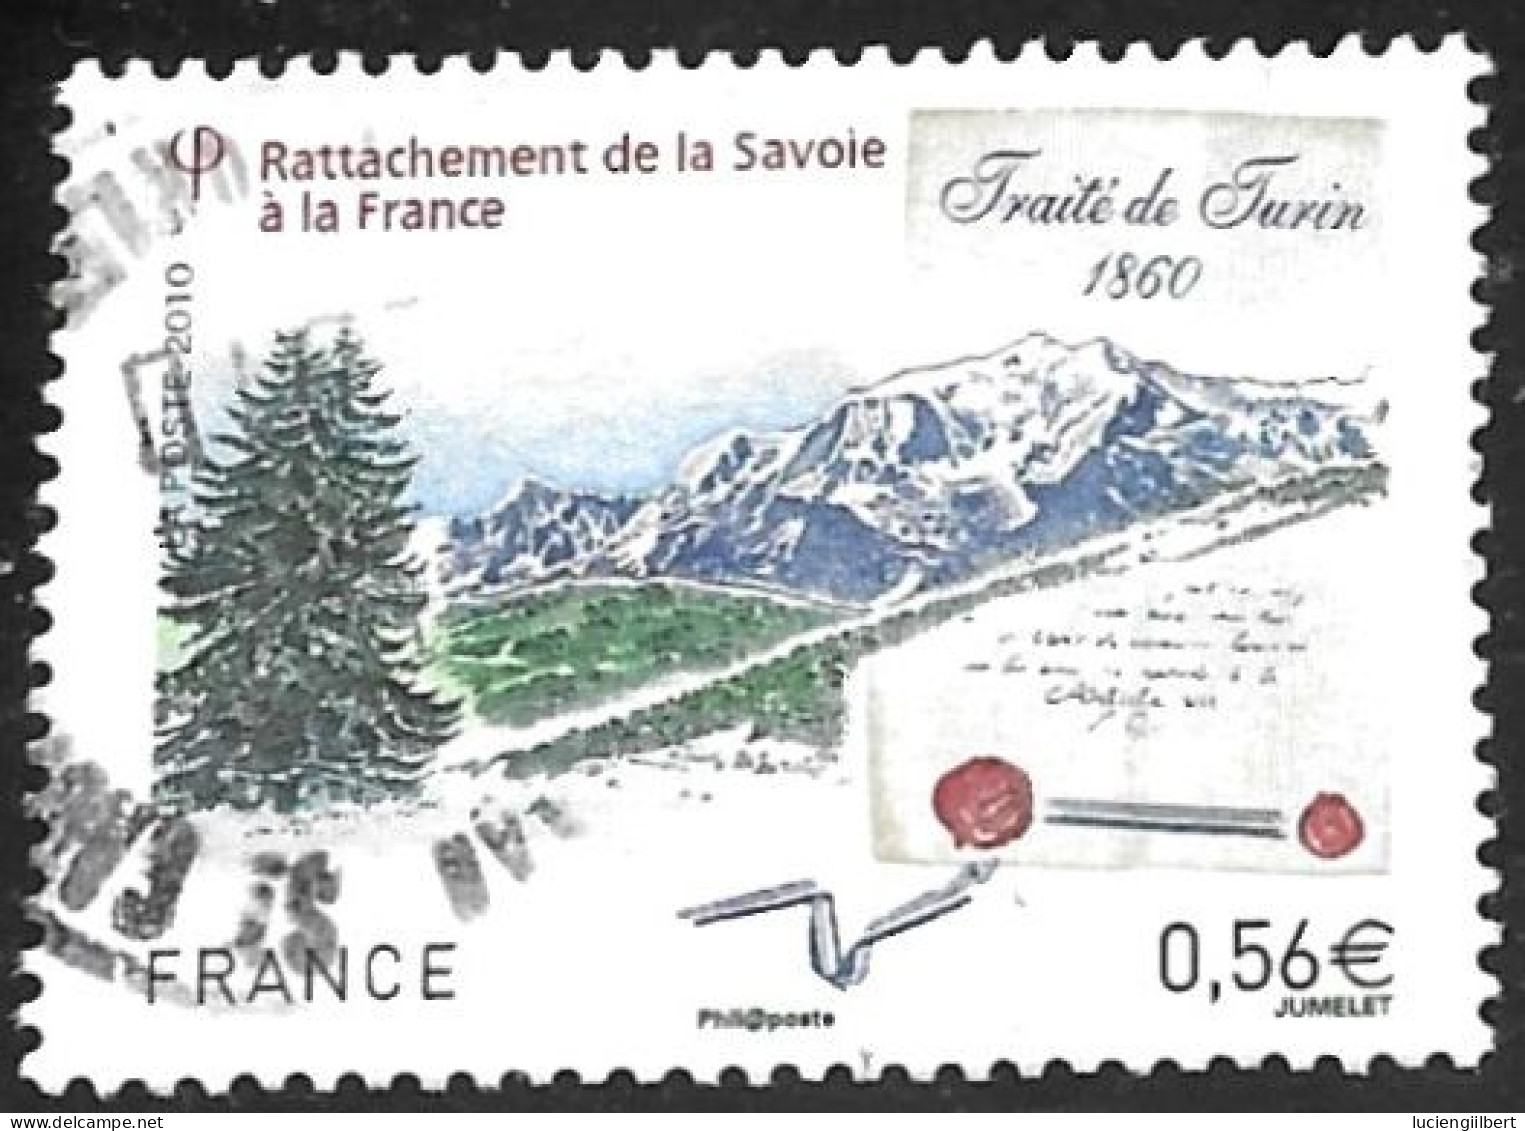 TIMBRE N° 4441  -   RATTACHEMENT DE LA SAVOIE A LA FRANCE  -  OBLITERE  -  2010 - Gebruikt